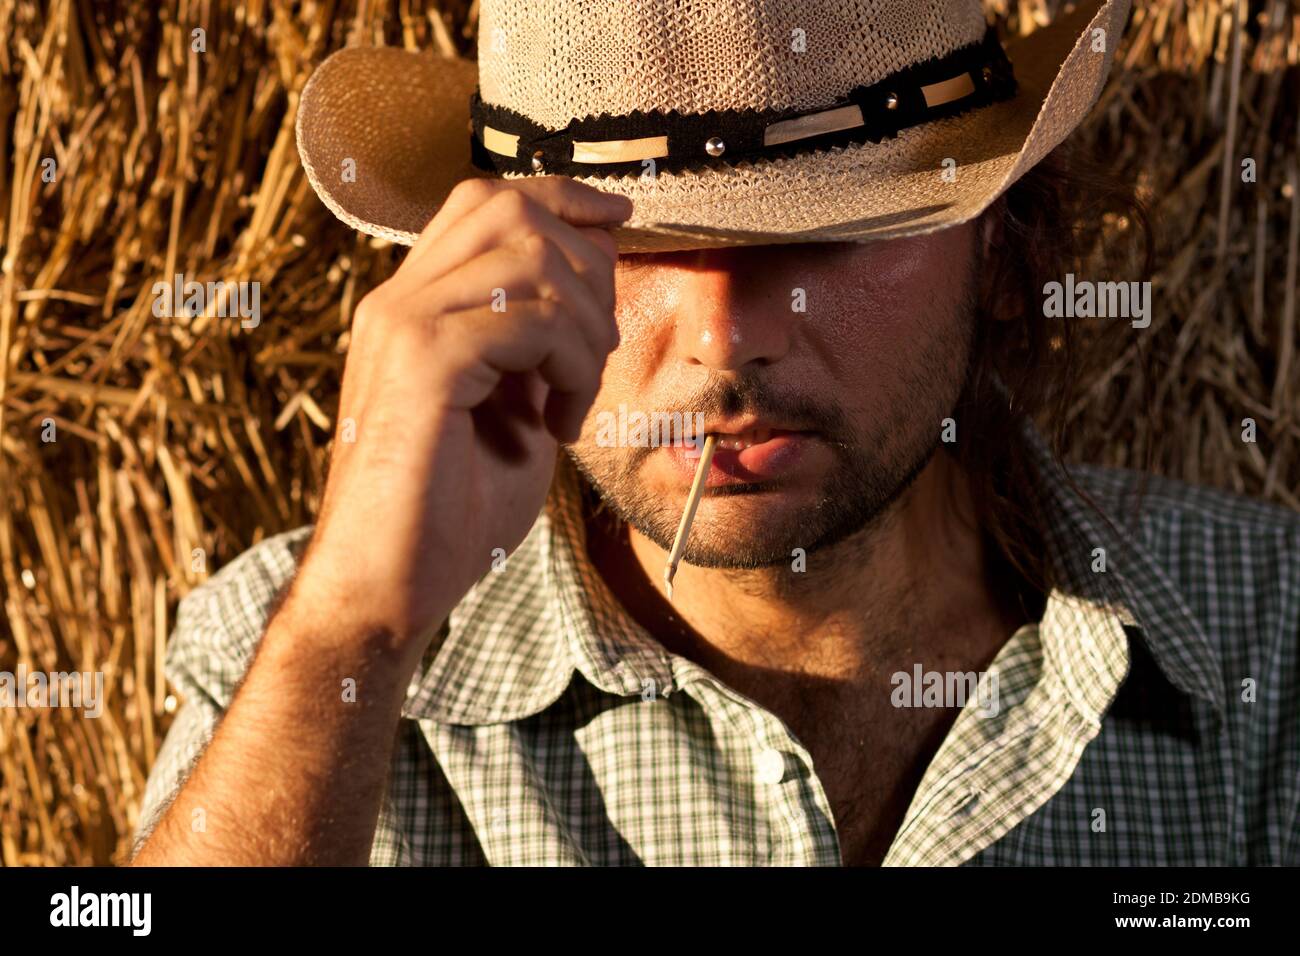 Cowboy avec de la paille dans sa bouche en tenant son chapeau Photo Stock -  Alamy